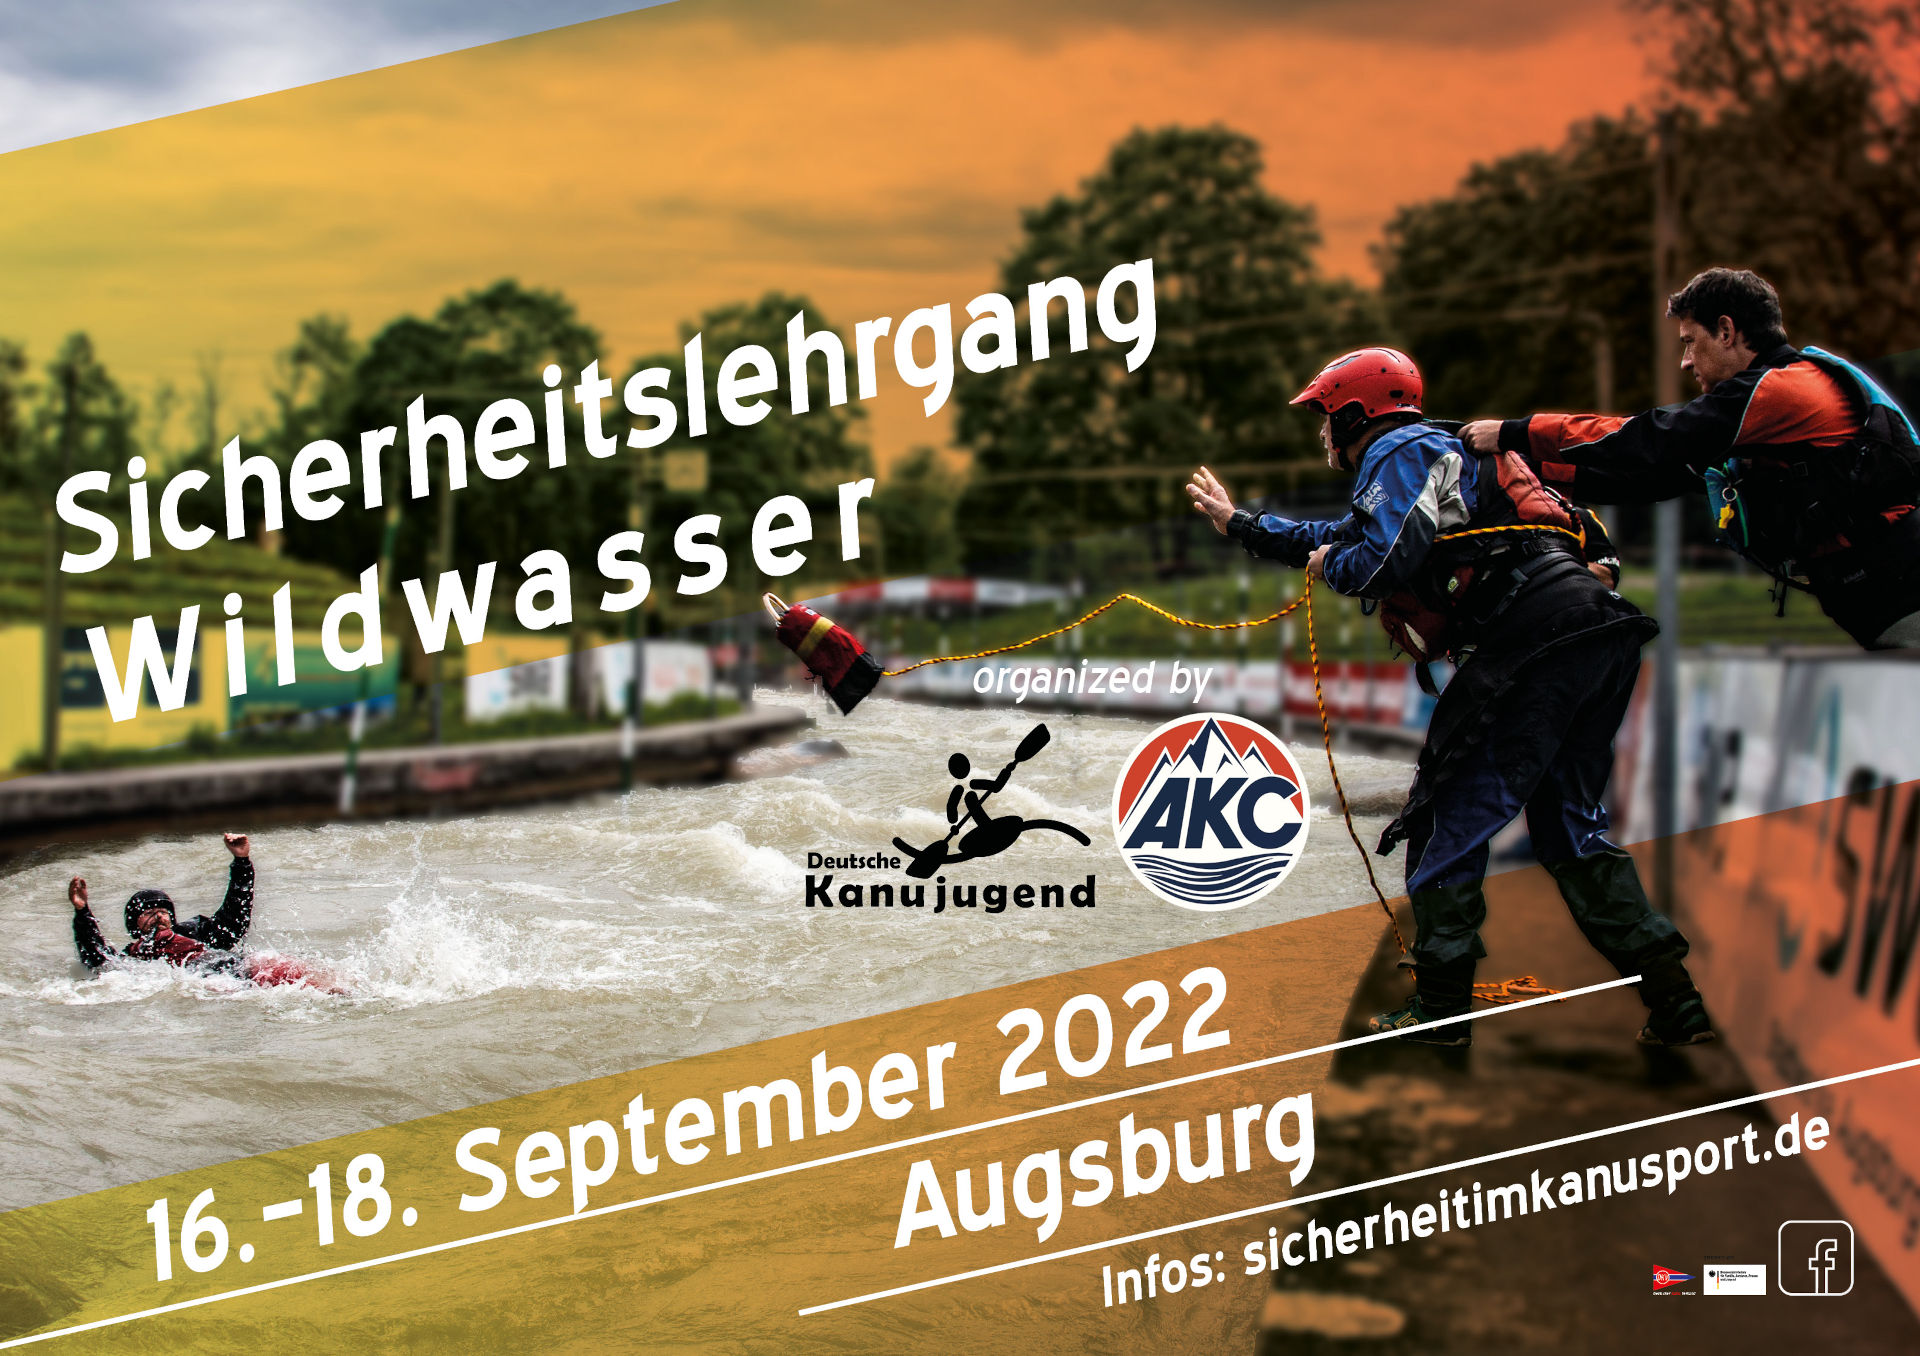 Vom 16.-18. September findet in Augsburg wieder unser Sicherheitslehrgang Wildwasser statt